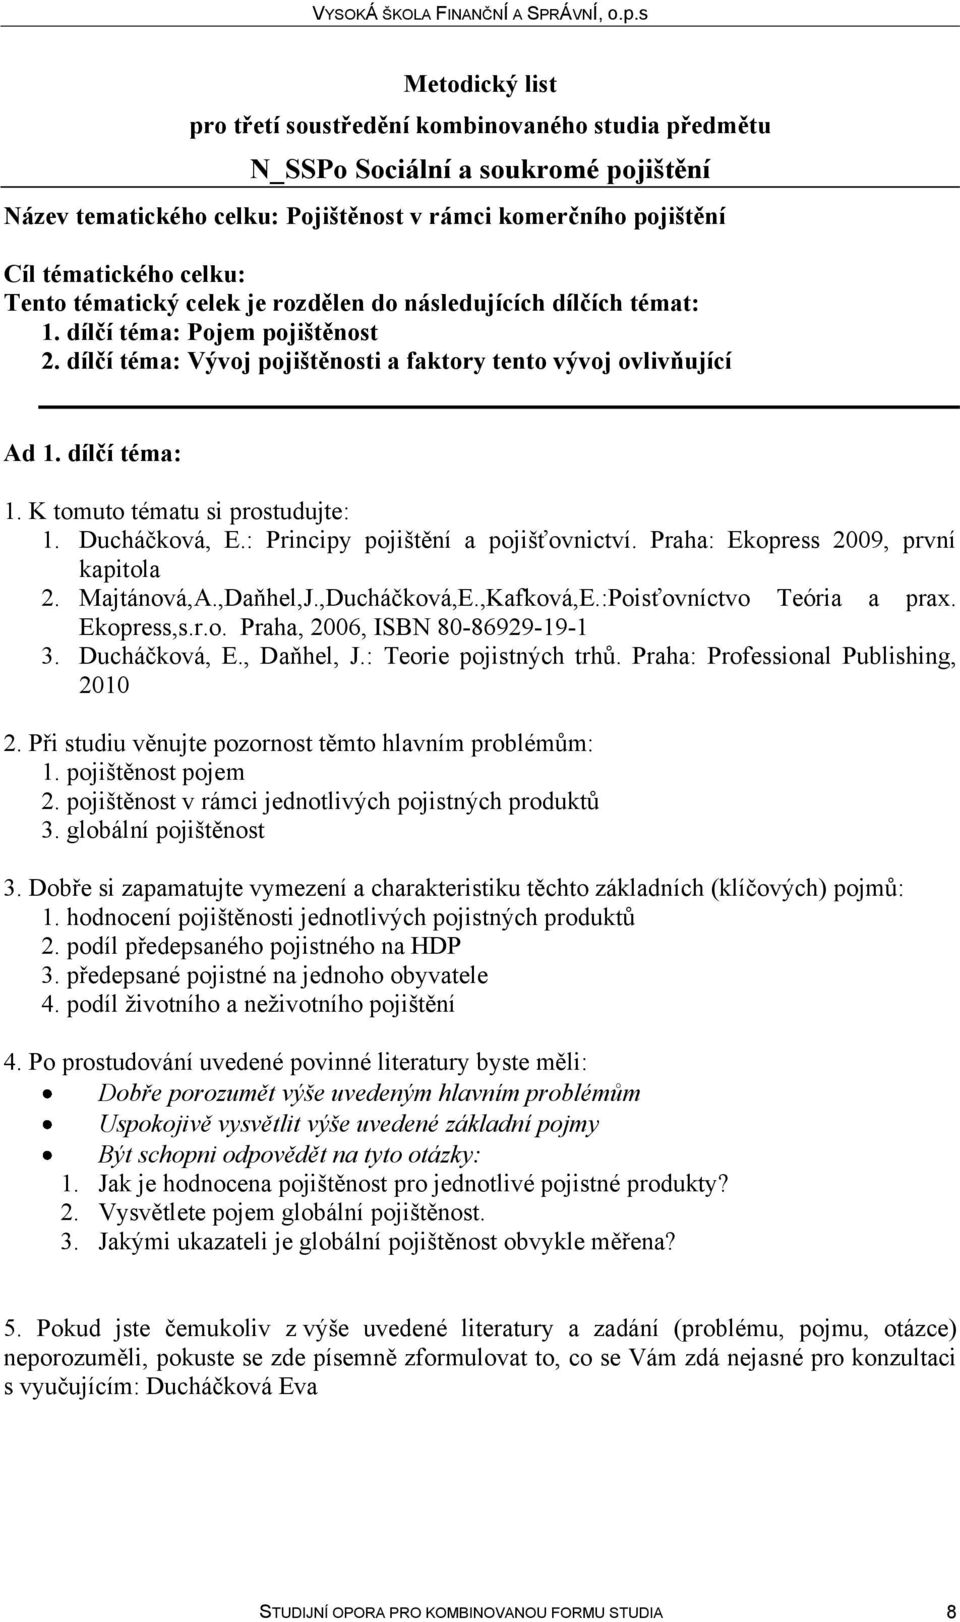 Praha: Ekopress 2009, první kapitola 2. Majtánová,A.,Daňhel,J.,Ducháčková,E.,Kafková,E.:Poisťovníctvo Teória a prax. Ekopress,s.r.o. Praha, 2006, ISBN 80-86929-19-1 3. Ducháčková, E., Daňhel, J.